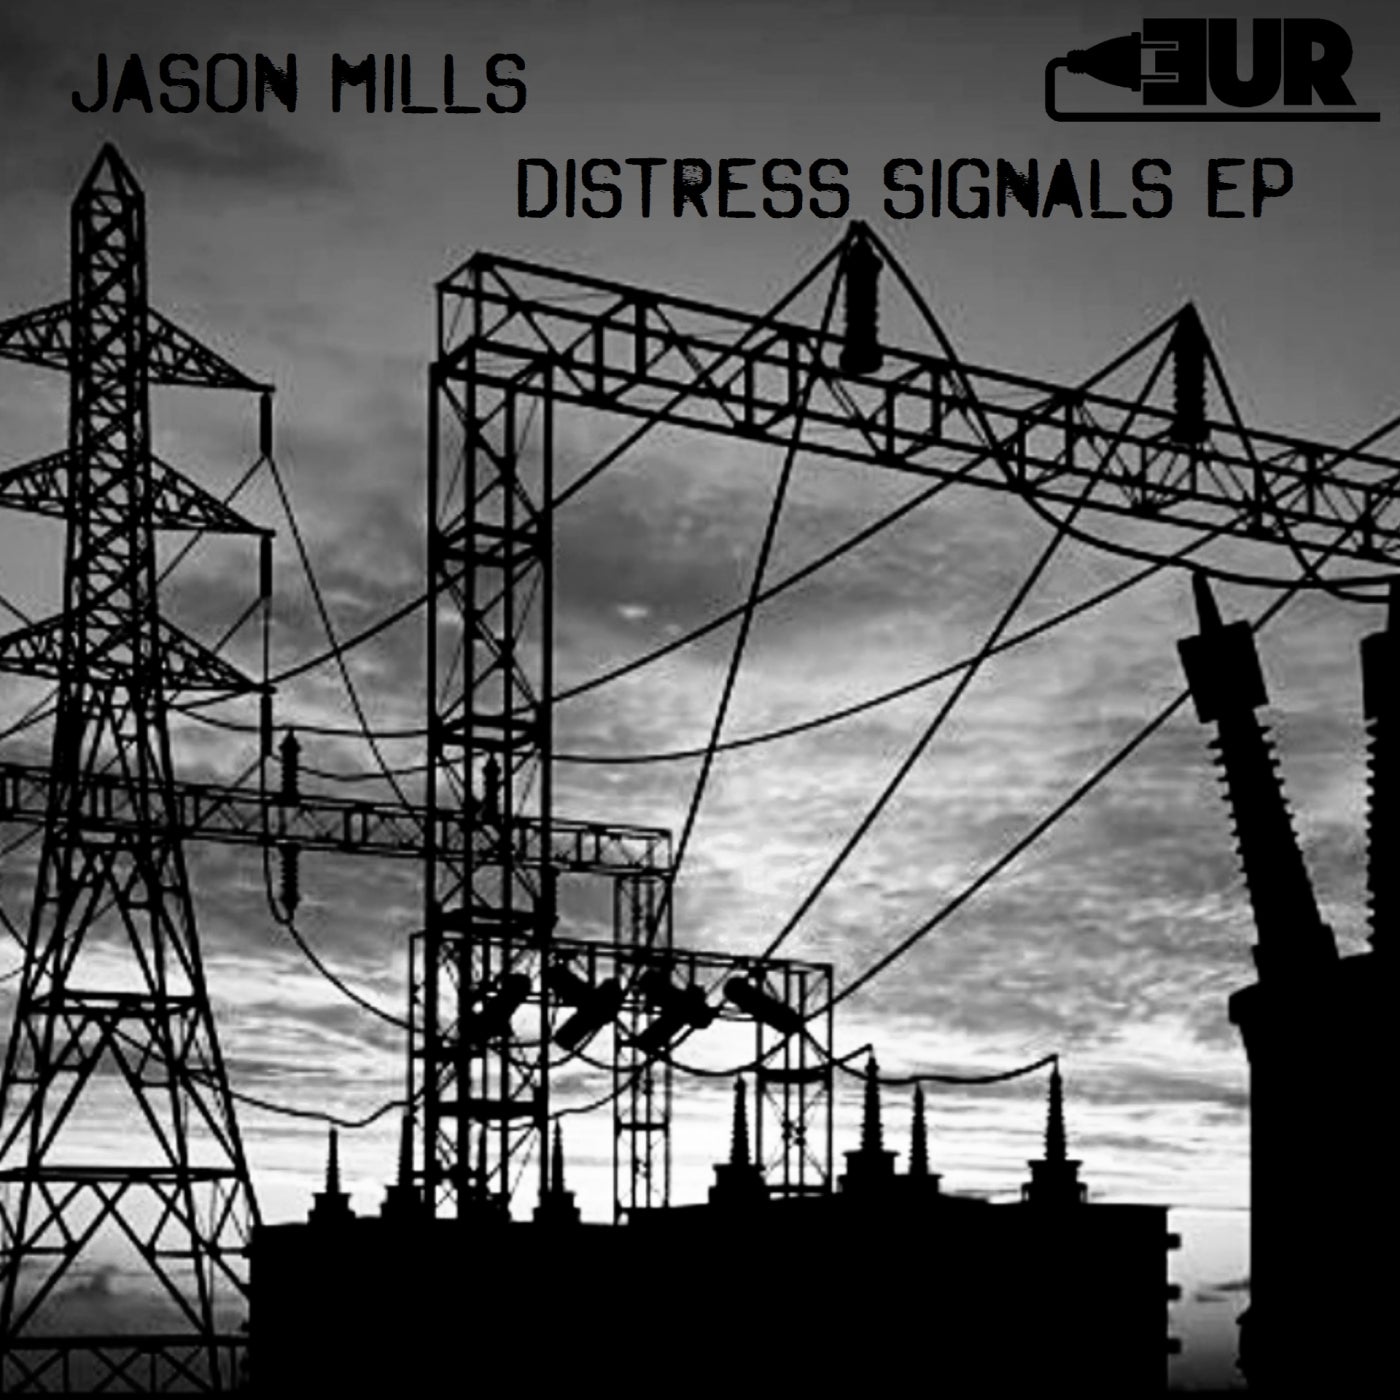 Distress Signals EP